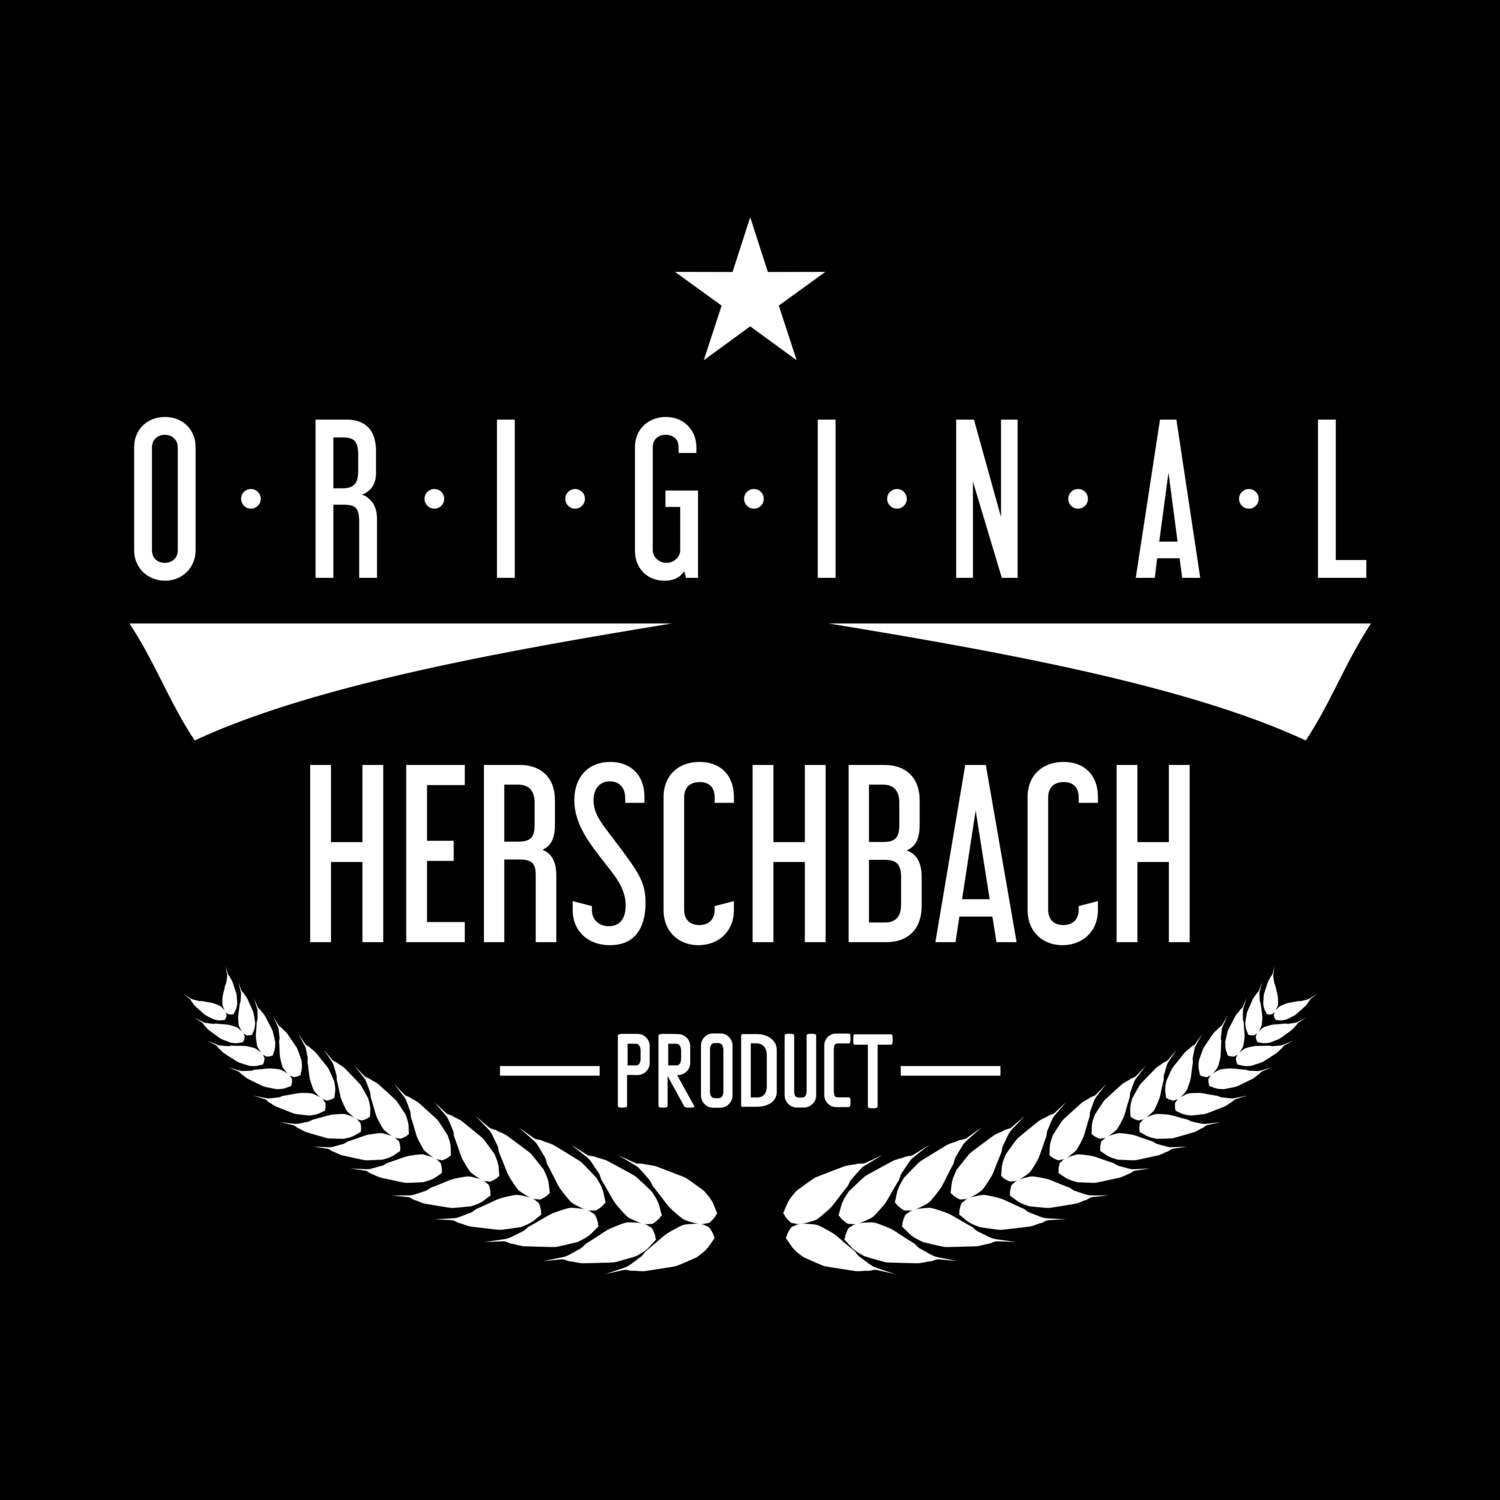 Herschbach T-Shirt »Original Product«